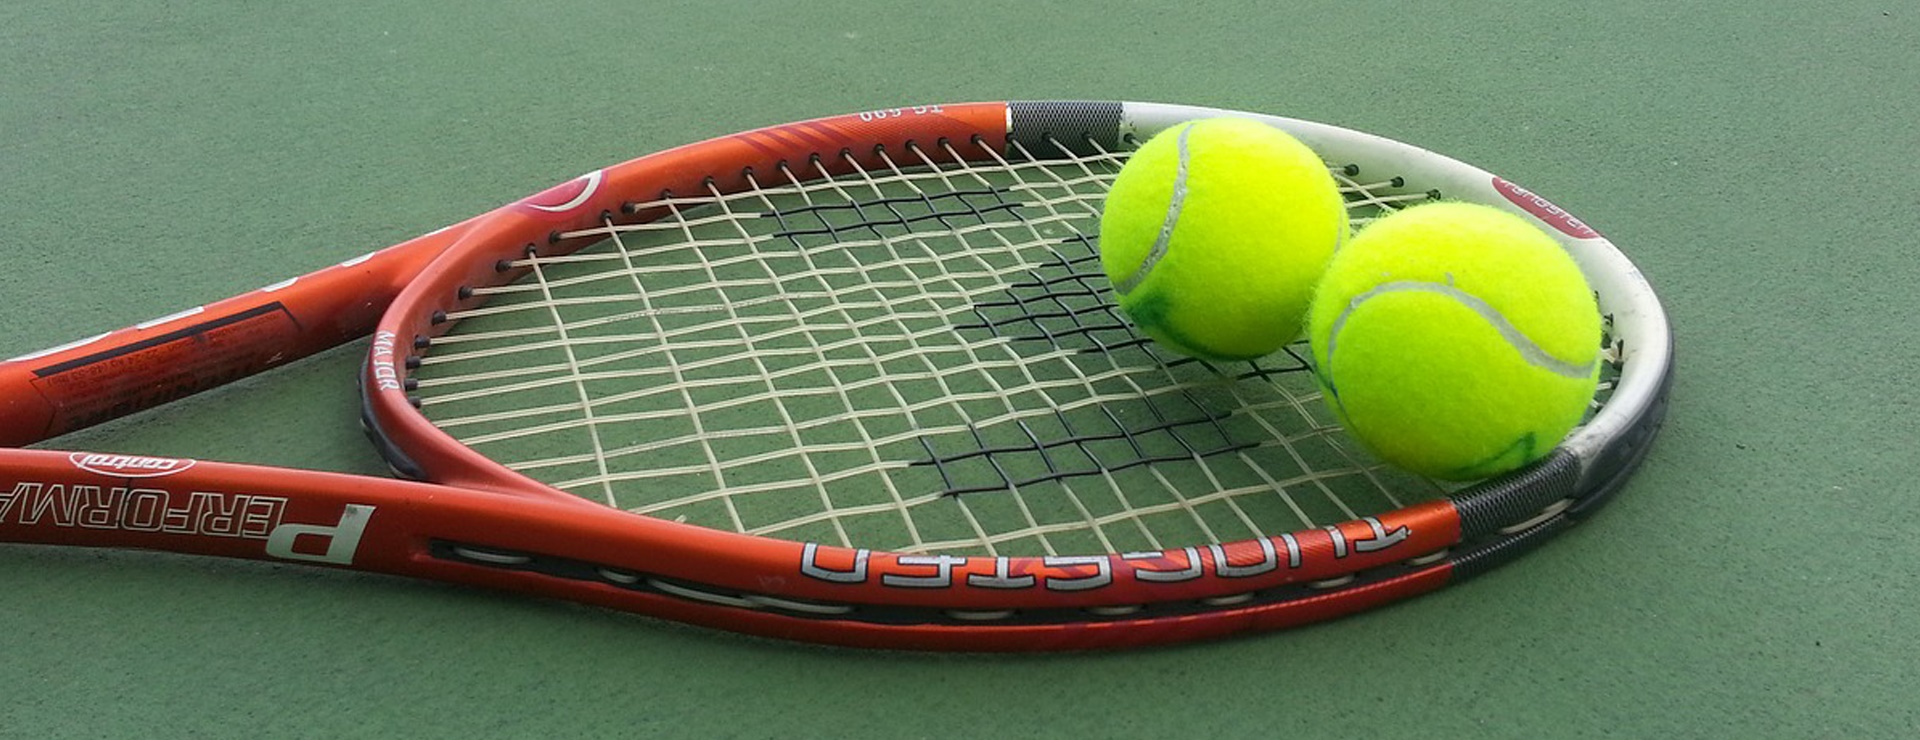 ده جلسه آموزش تنیس در مجموعه ورزشی آجودانیه با ۷۱درصد تخفیف